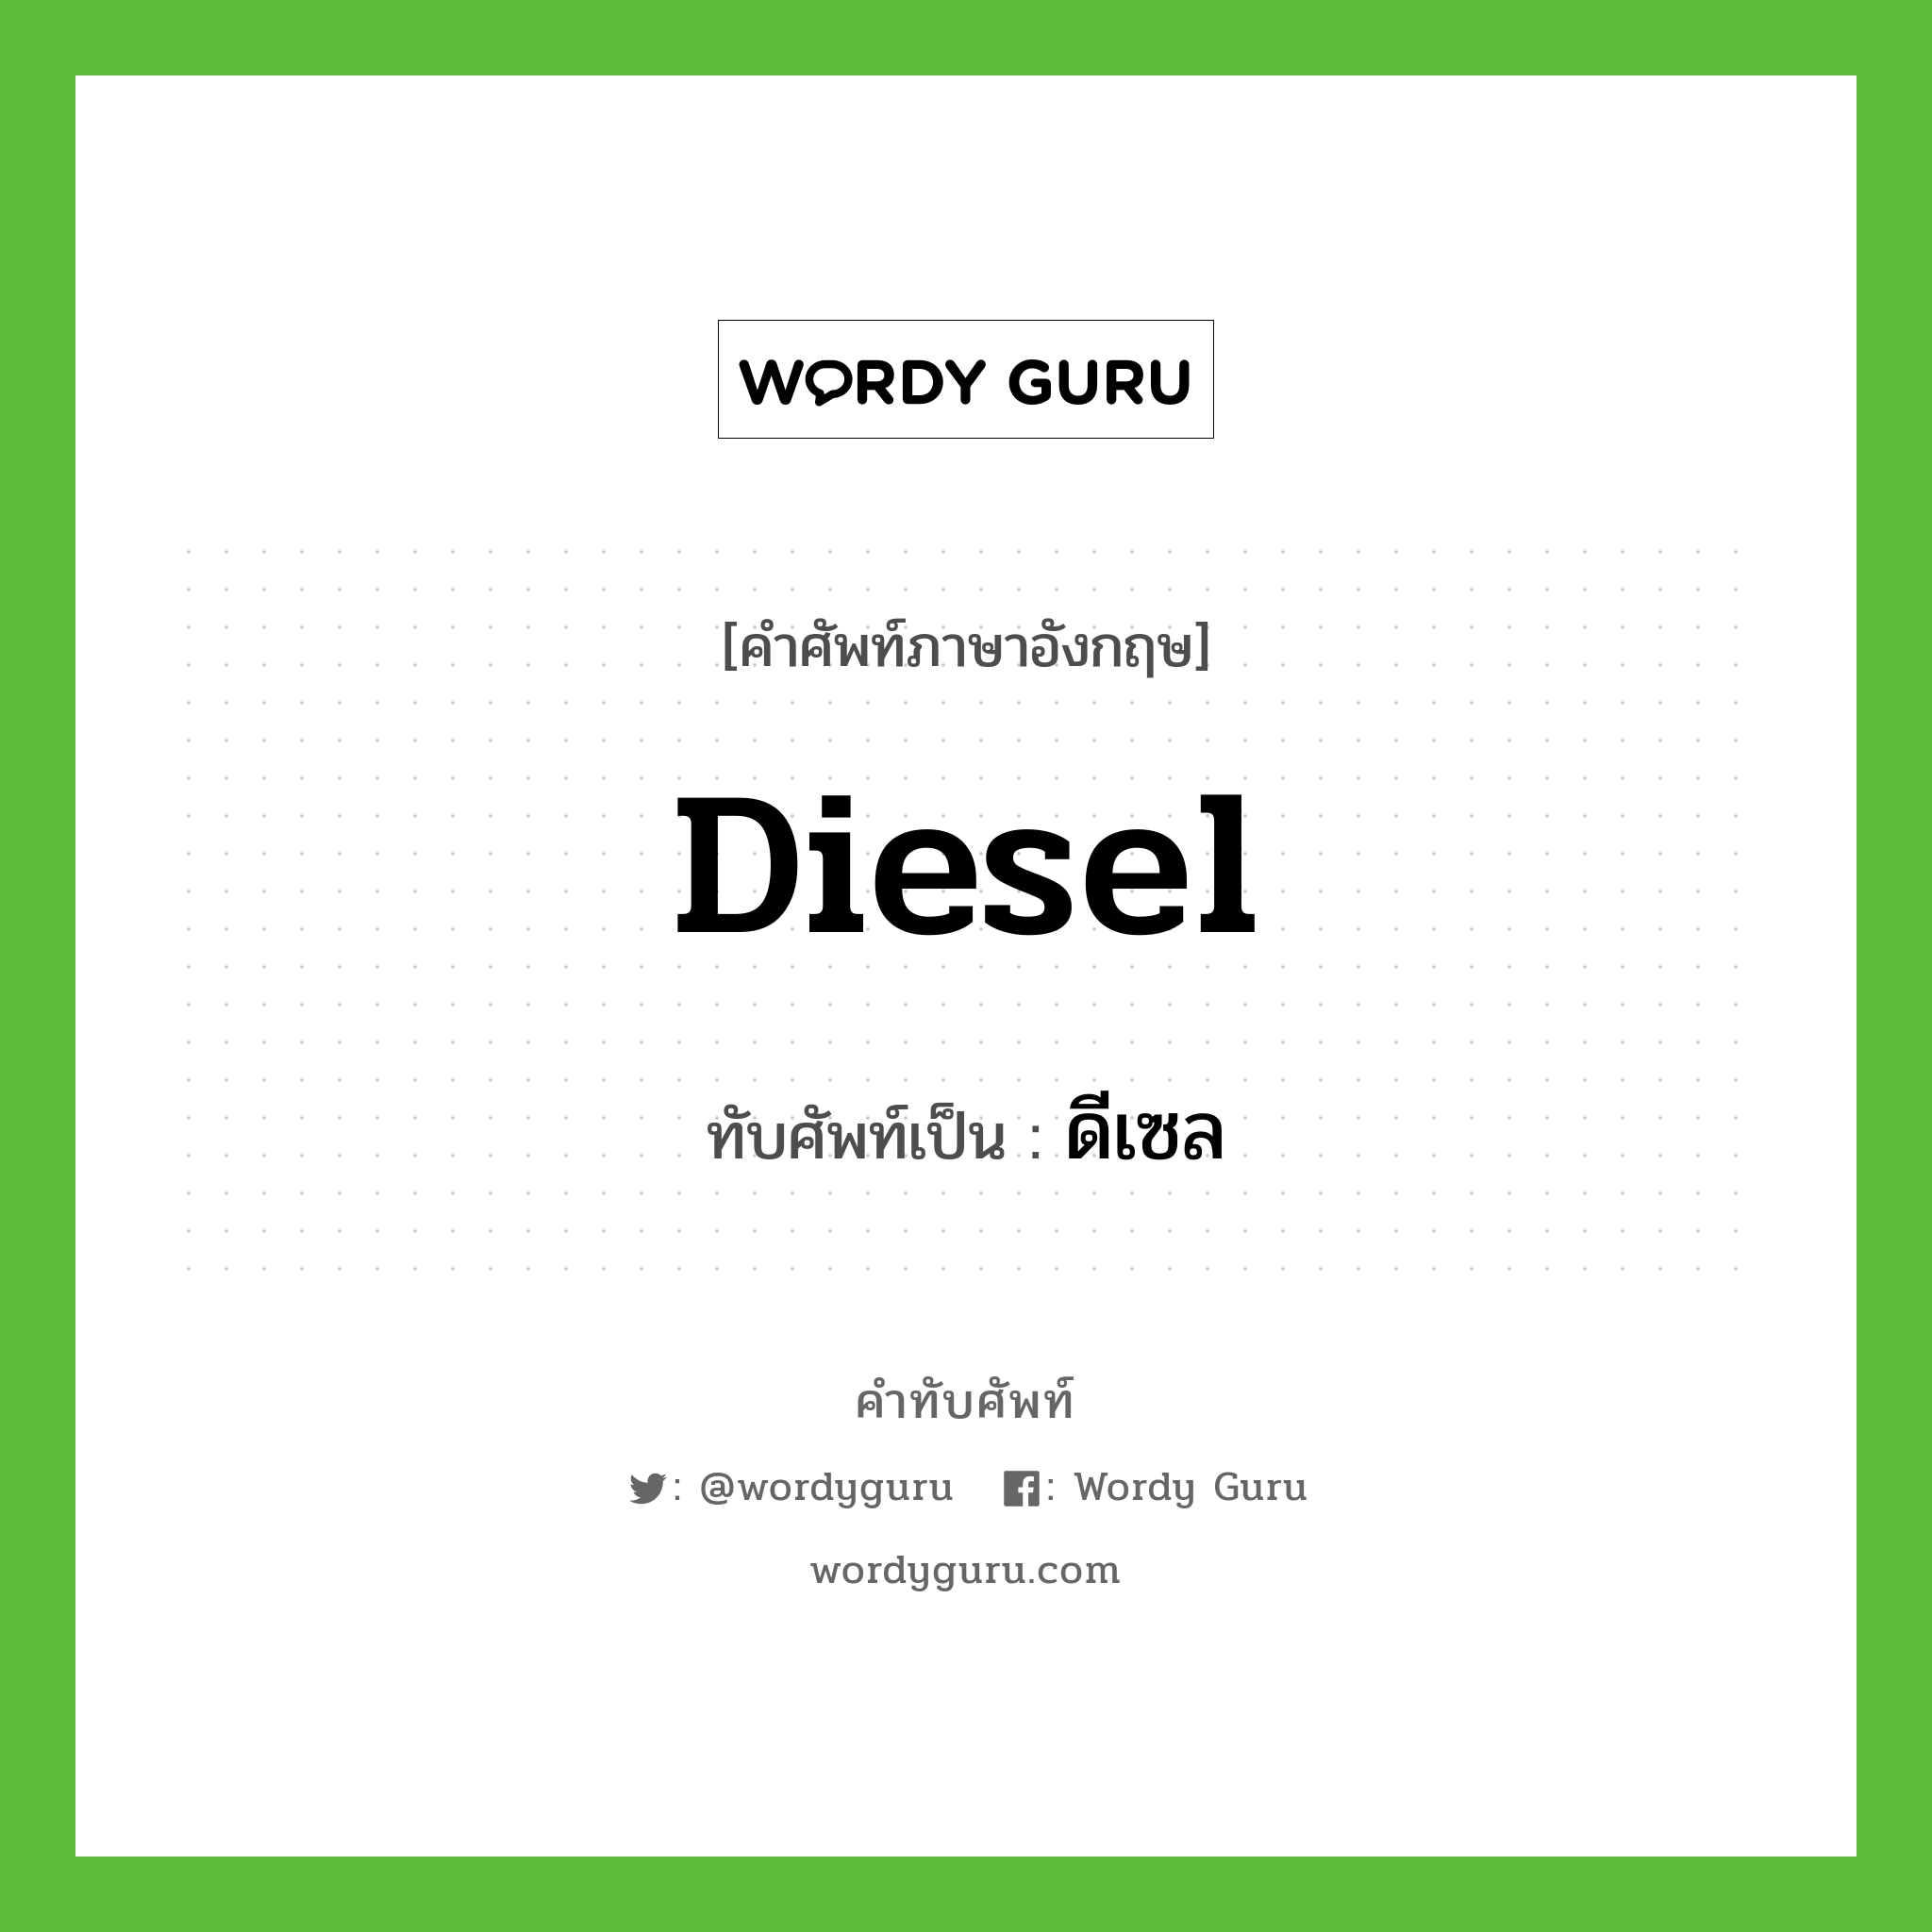 diesel เขียนเป็นคำไทยว่าอะไร?, คำศัพท์ภาษาอังกฤษ diesel ทับศัพท์เป็น ดีเซล